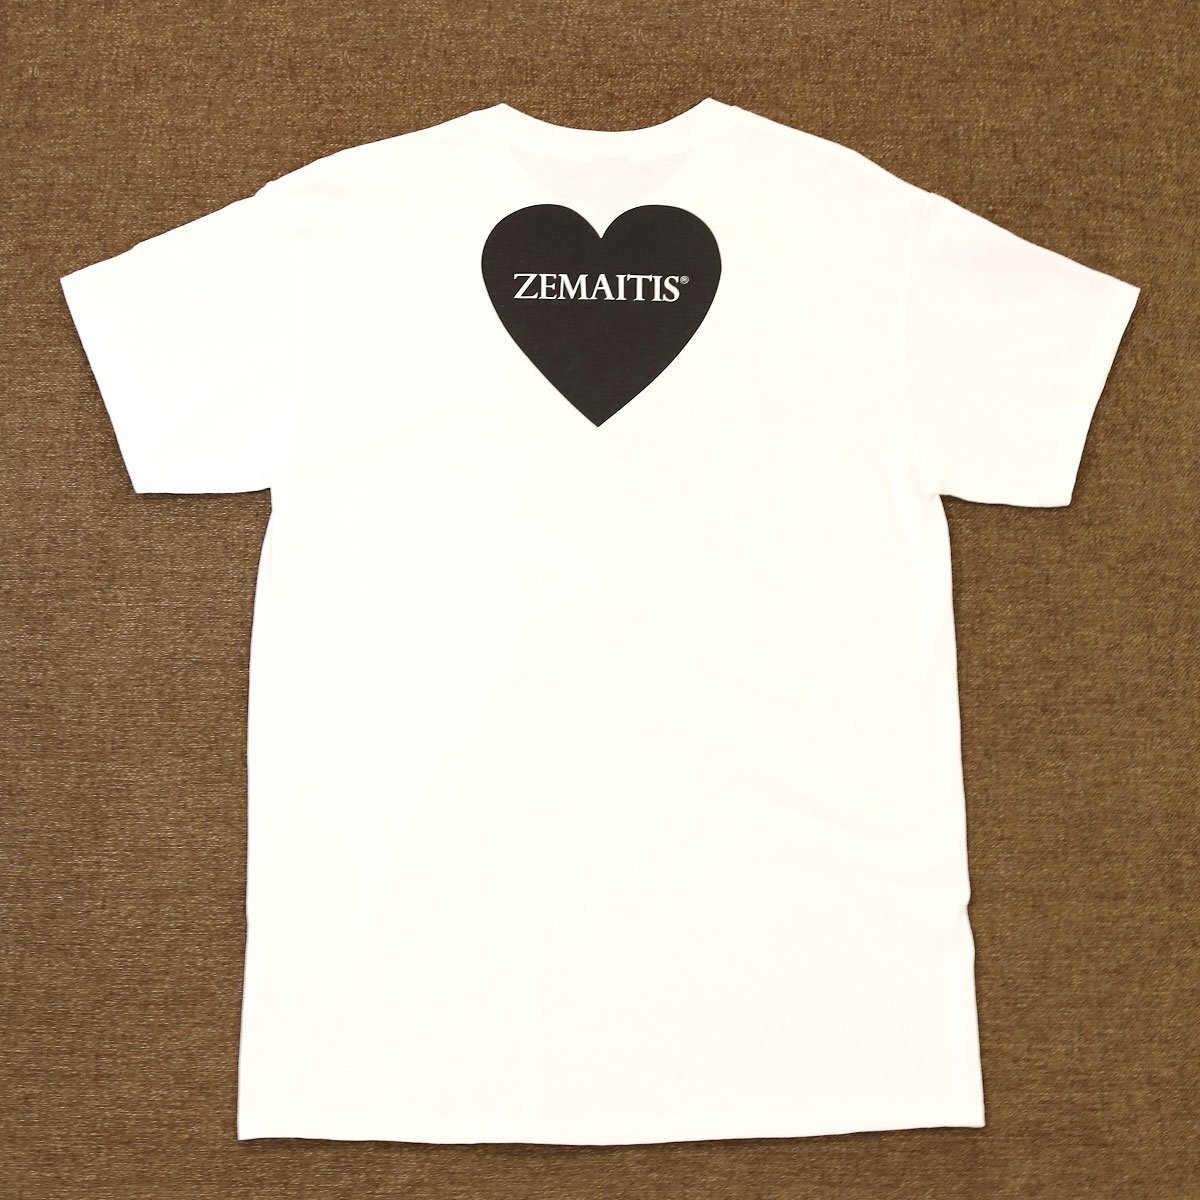 送料無料 新品 ZEMAITIS T-SHIRTS HEART WHT M ゼマイティス 半袖 Tシャツ メンズ Mサイズ 白 ホワイト コットン100% ロックT ハート_画像2